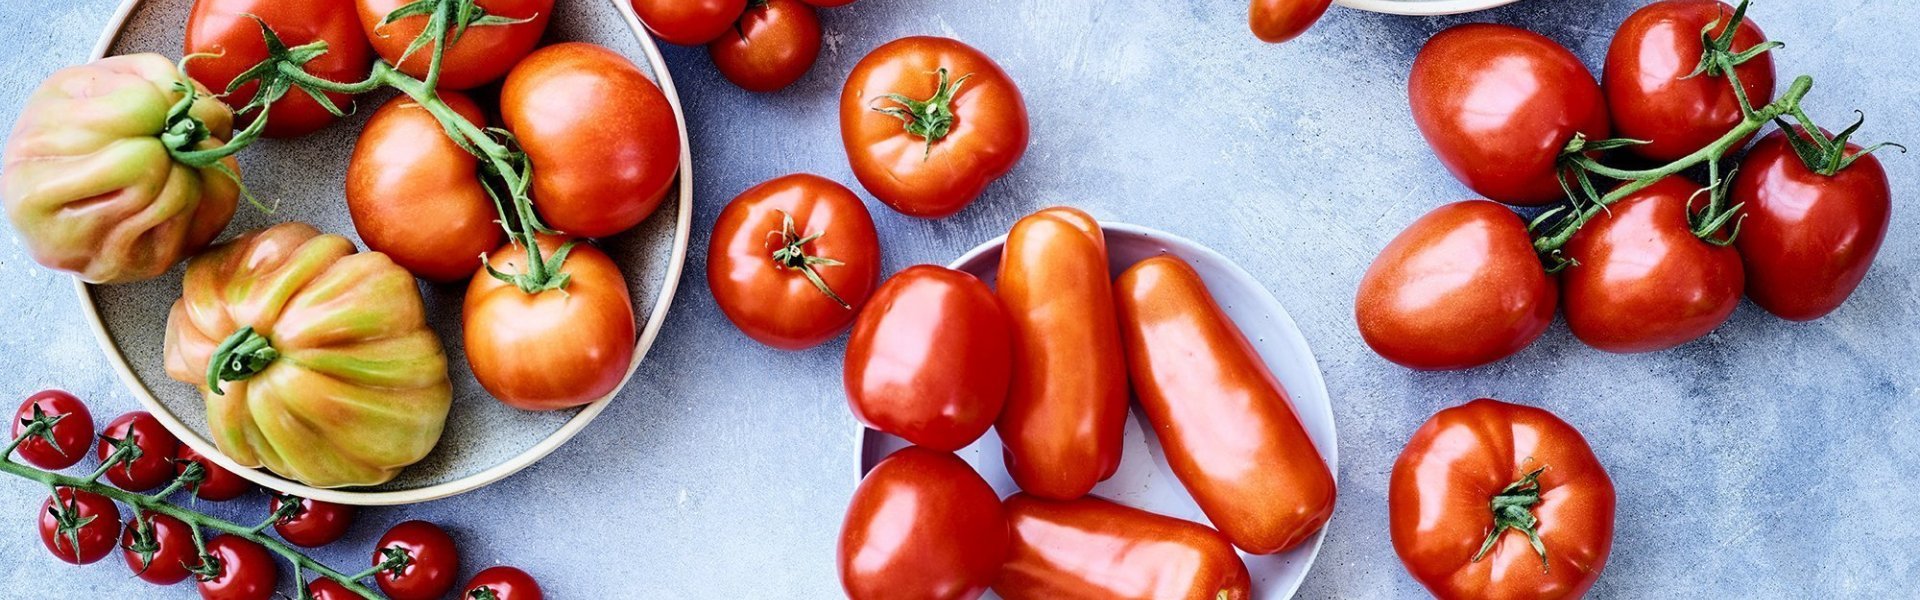 Op het keukenaanrecht, in betonlook, liggen verschillende variëteiten van tomaten. 50 tinten rood in 1 beeld. 